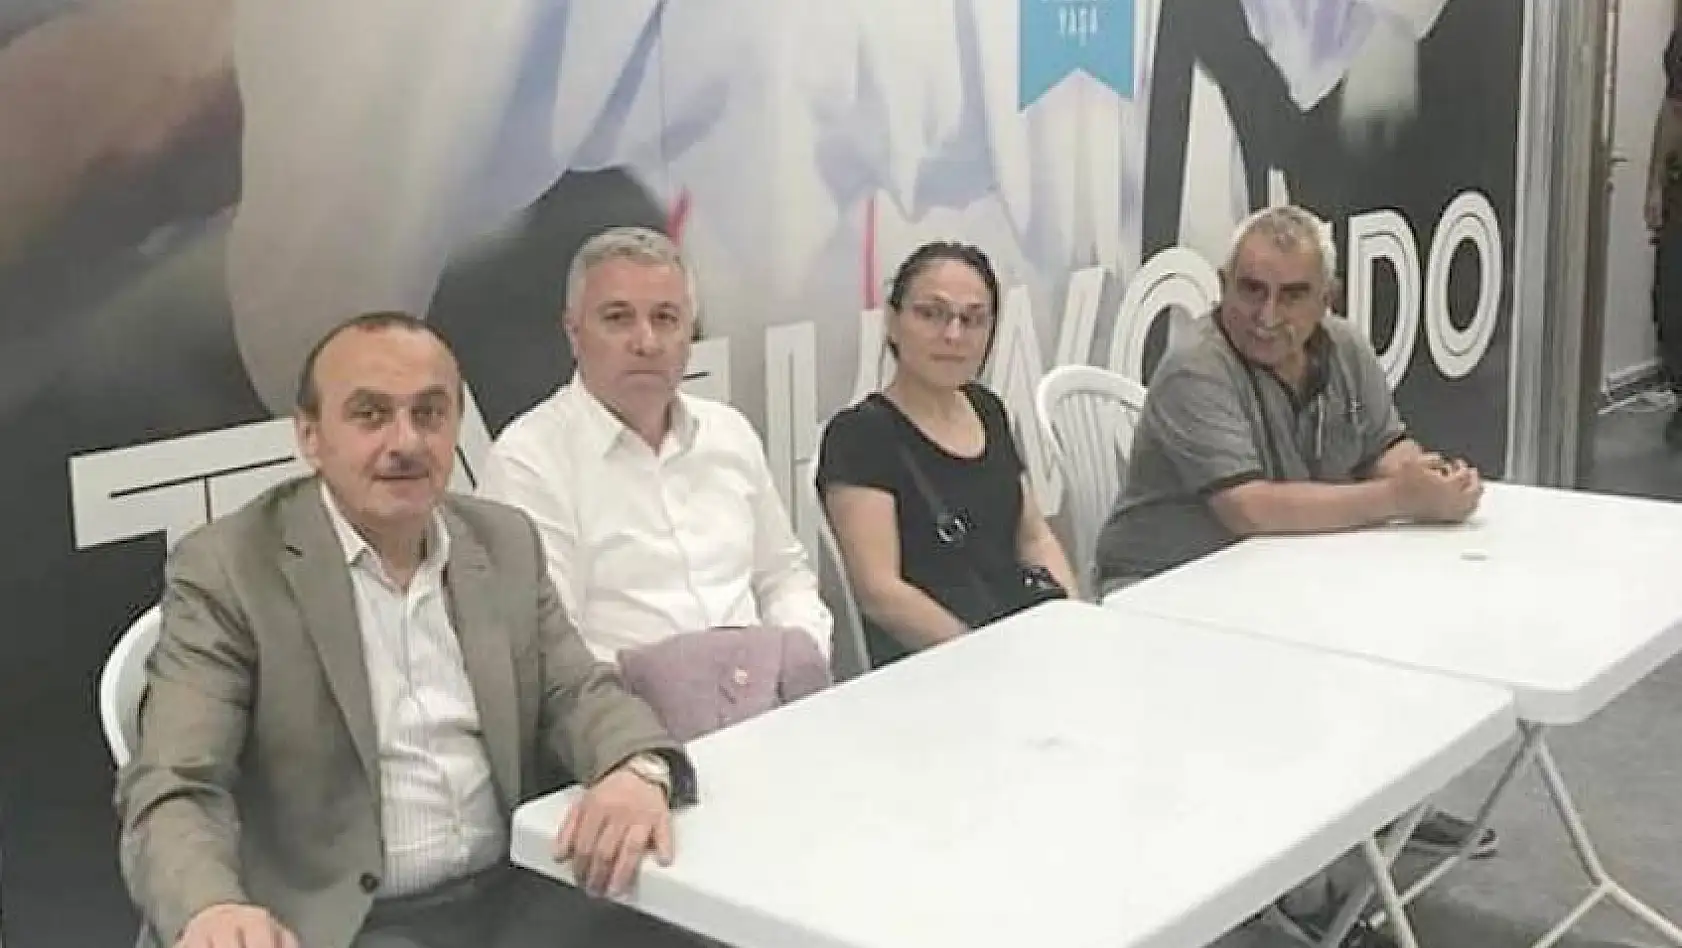 CHP Milletvekili Çetin Arık: Kimsenin hakkını yemedik, yedirmeyeceğiz